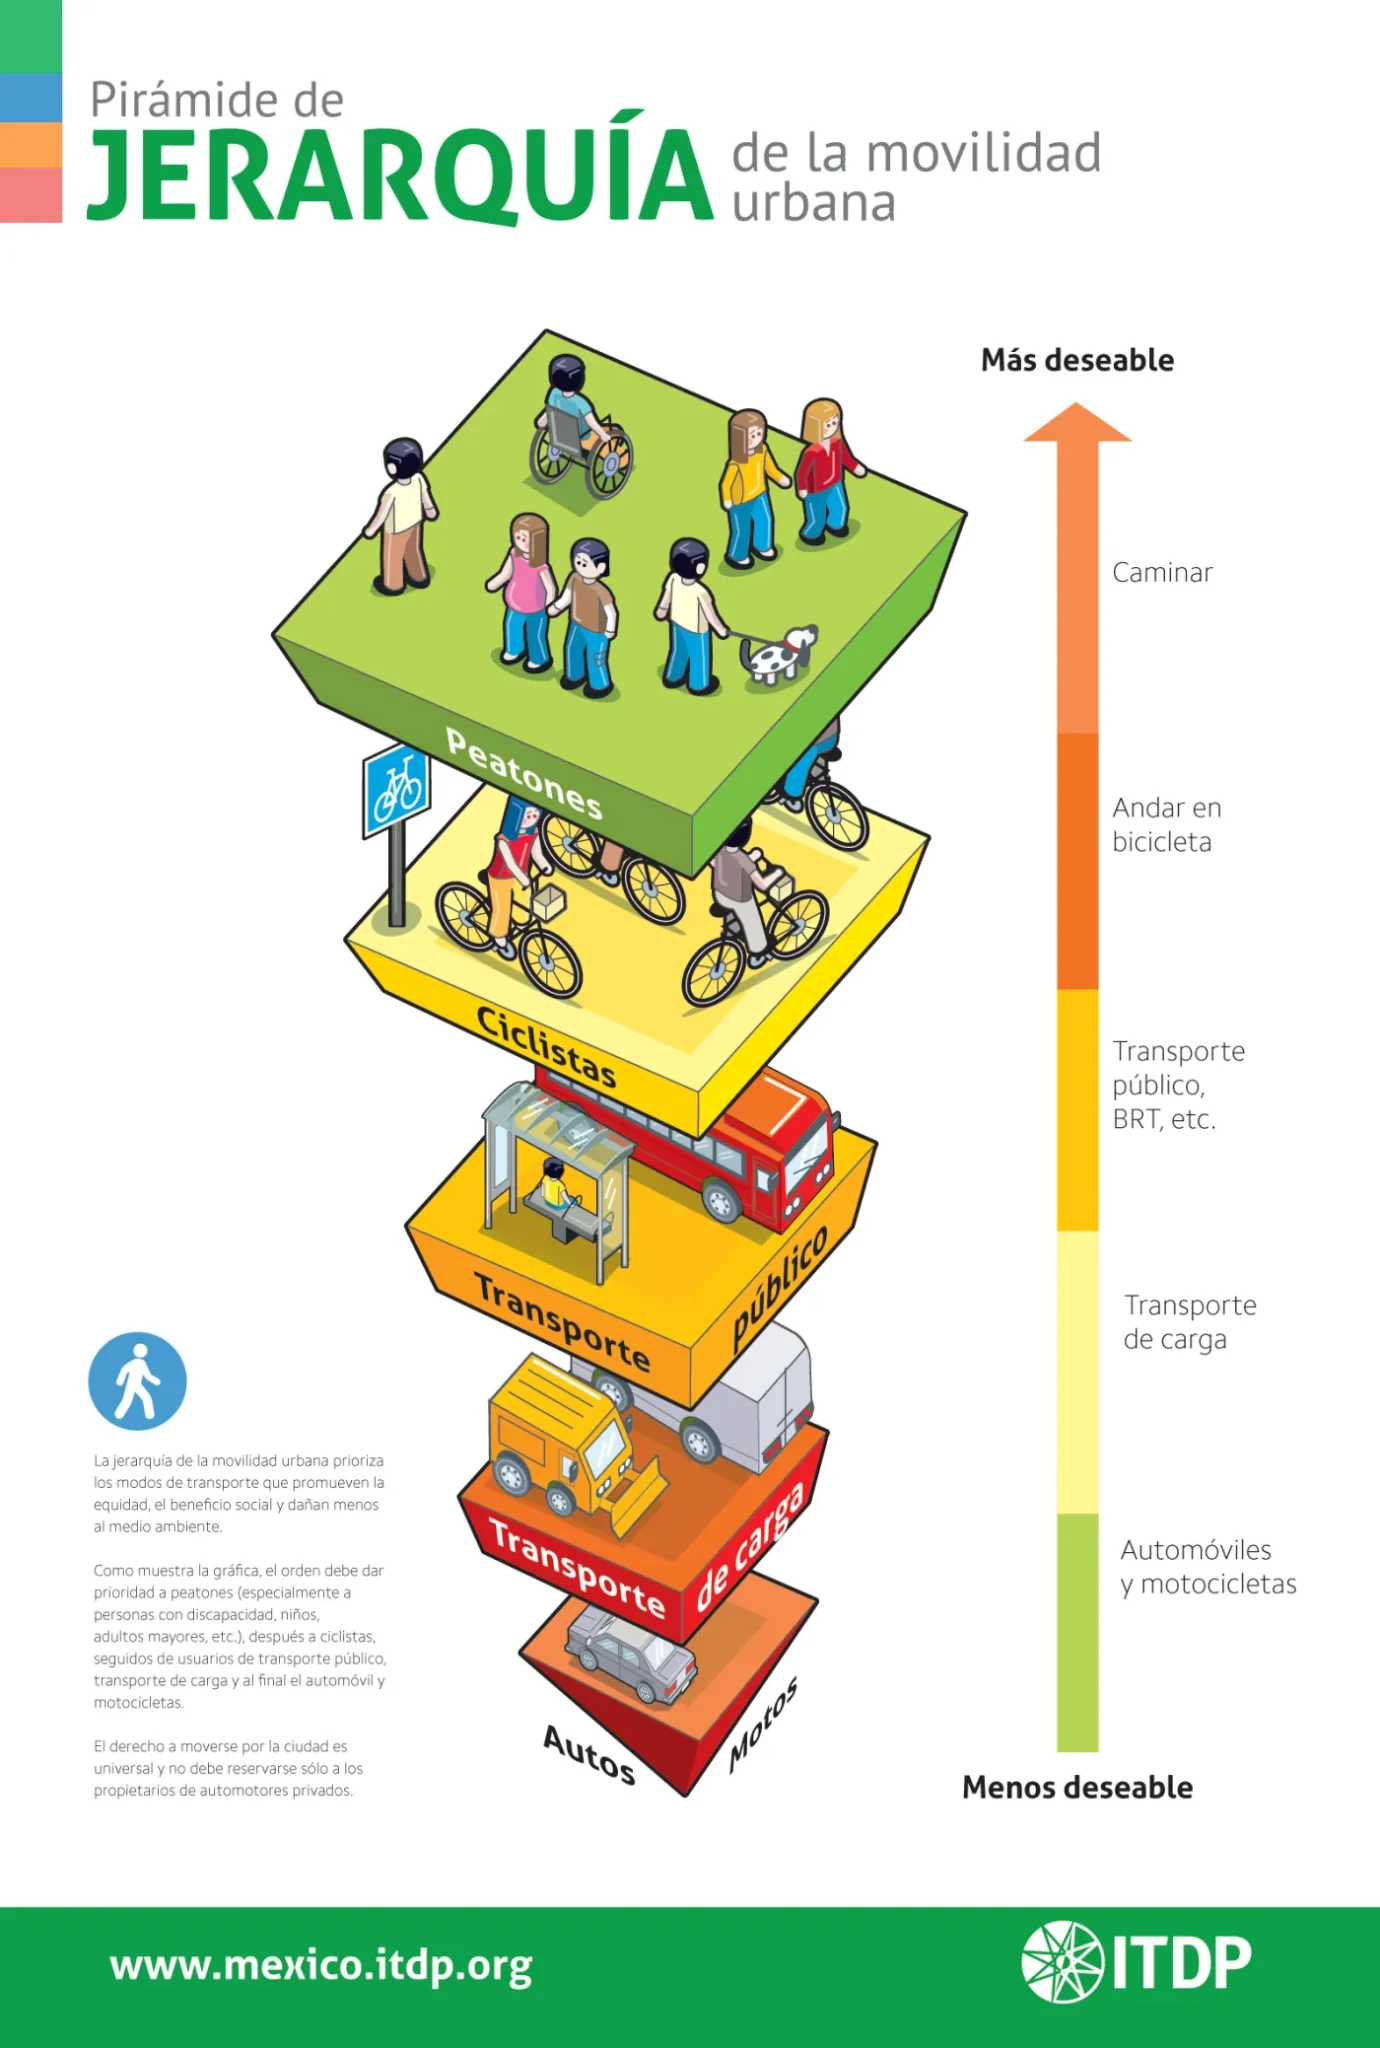 Pirámide de jerarquía de movilidad urbana. 